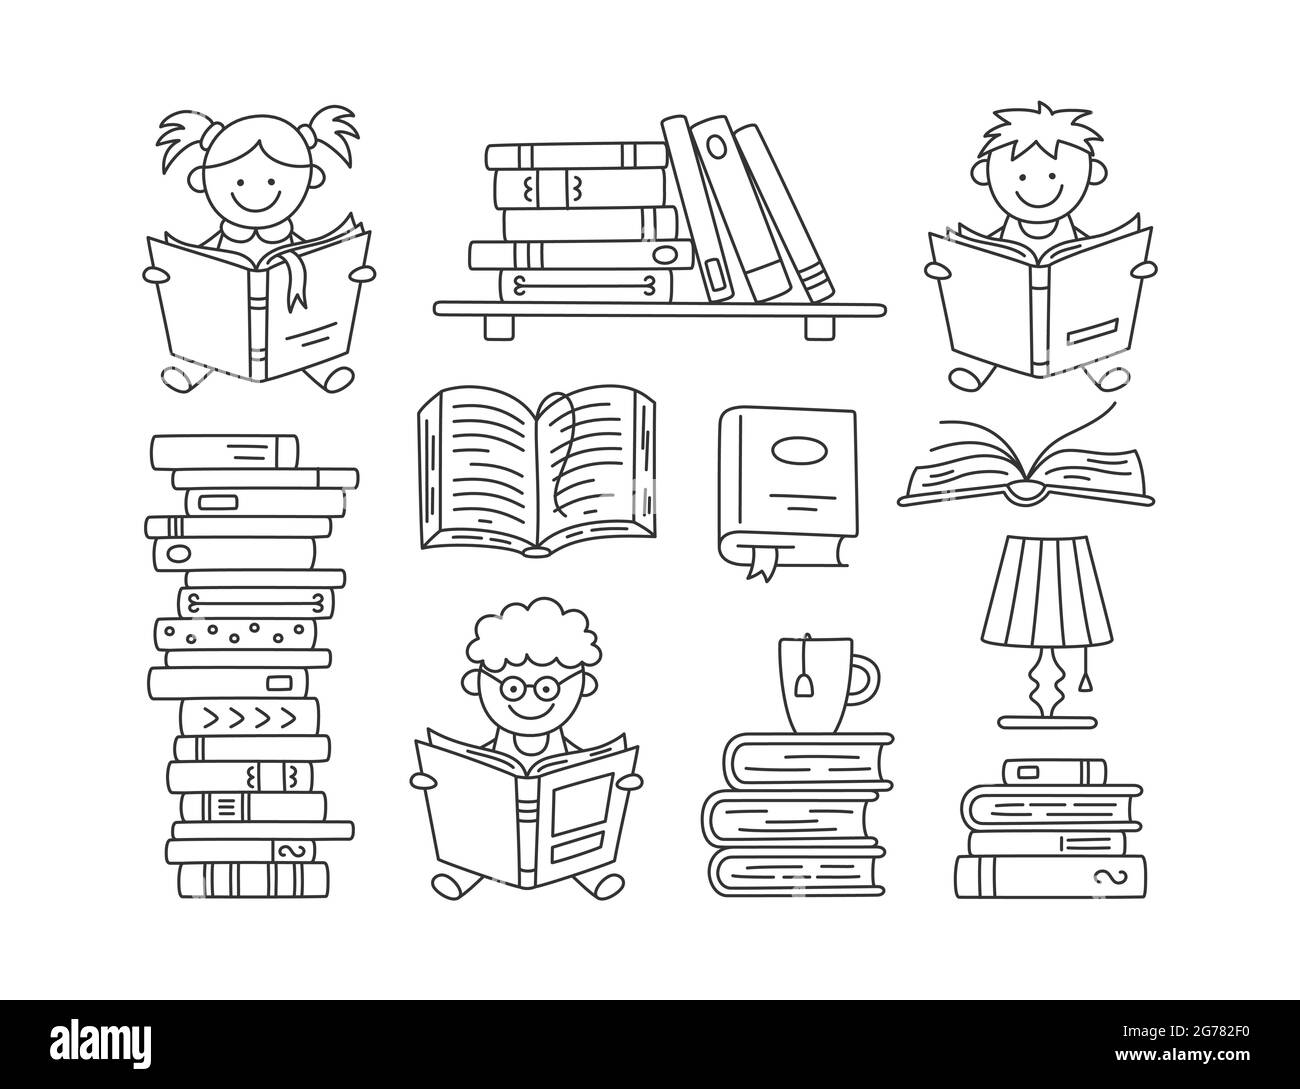 Satz von Büchern und lesenden Kindern. Handgezeichnete kleine Kinder halten Bücher offen und lesen. Satz von Vektorgrafiken, die auf weißem Hintergrund in isoliert sind Stock Vektor